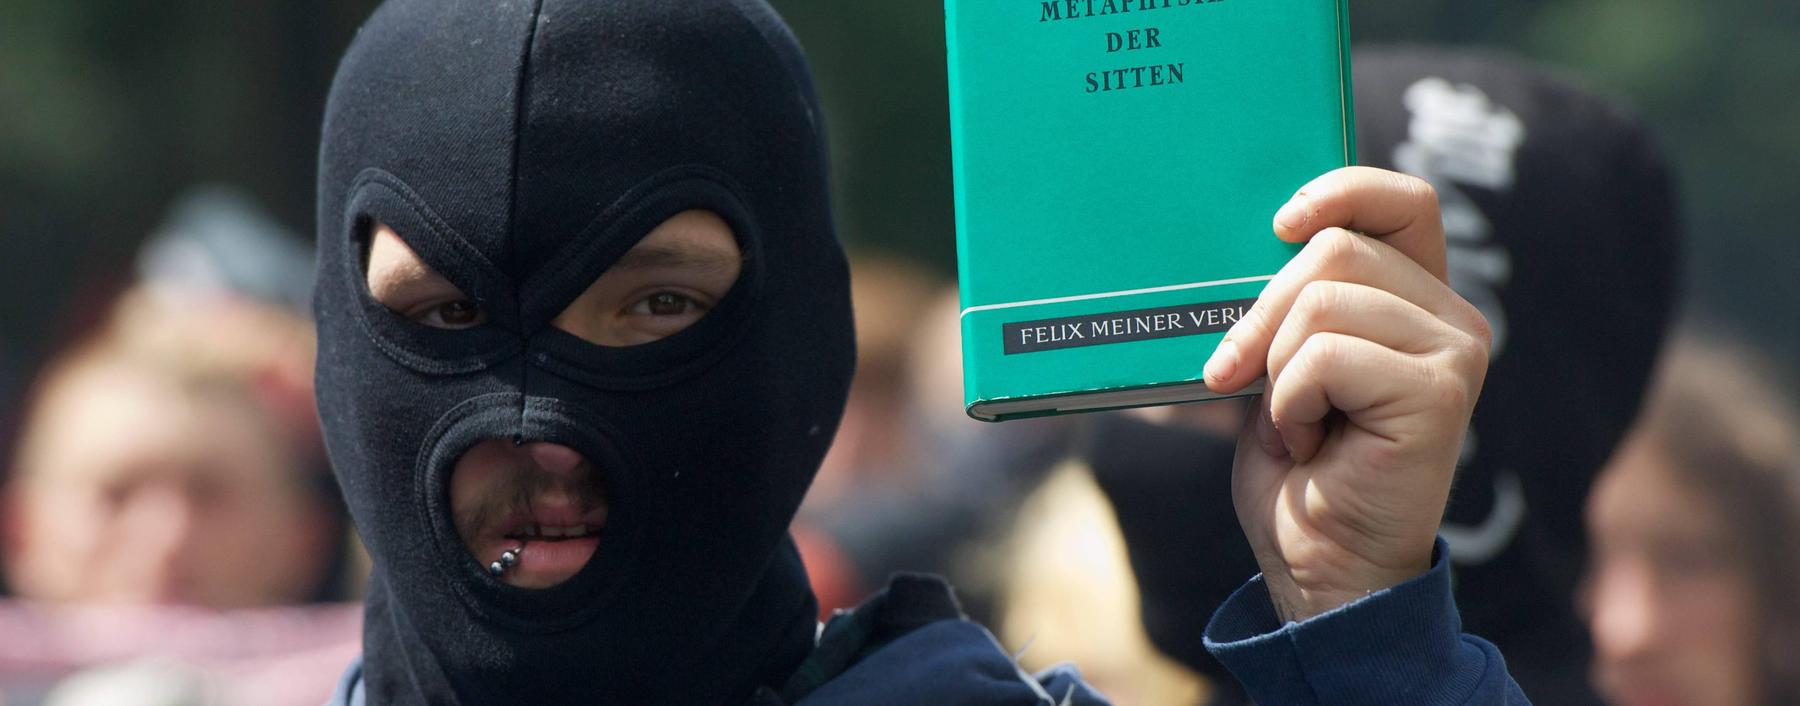 Auch dieser Bürgerschreck von der Antifa liest den bürgerlichsten aller Philosophen: Auf einer Demo in Hamburg von 2012.